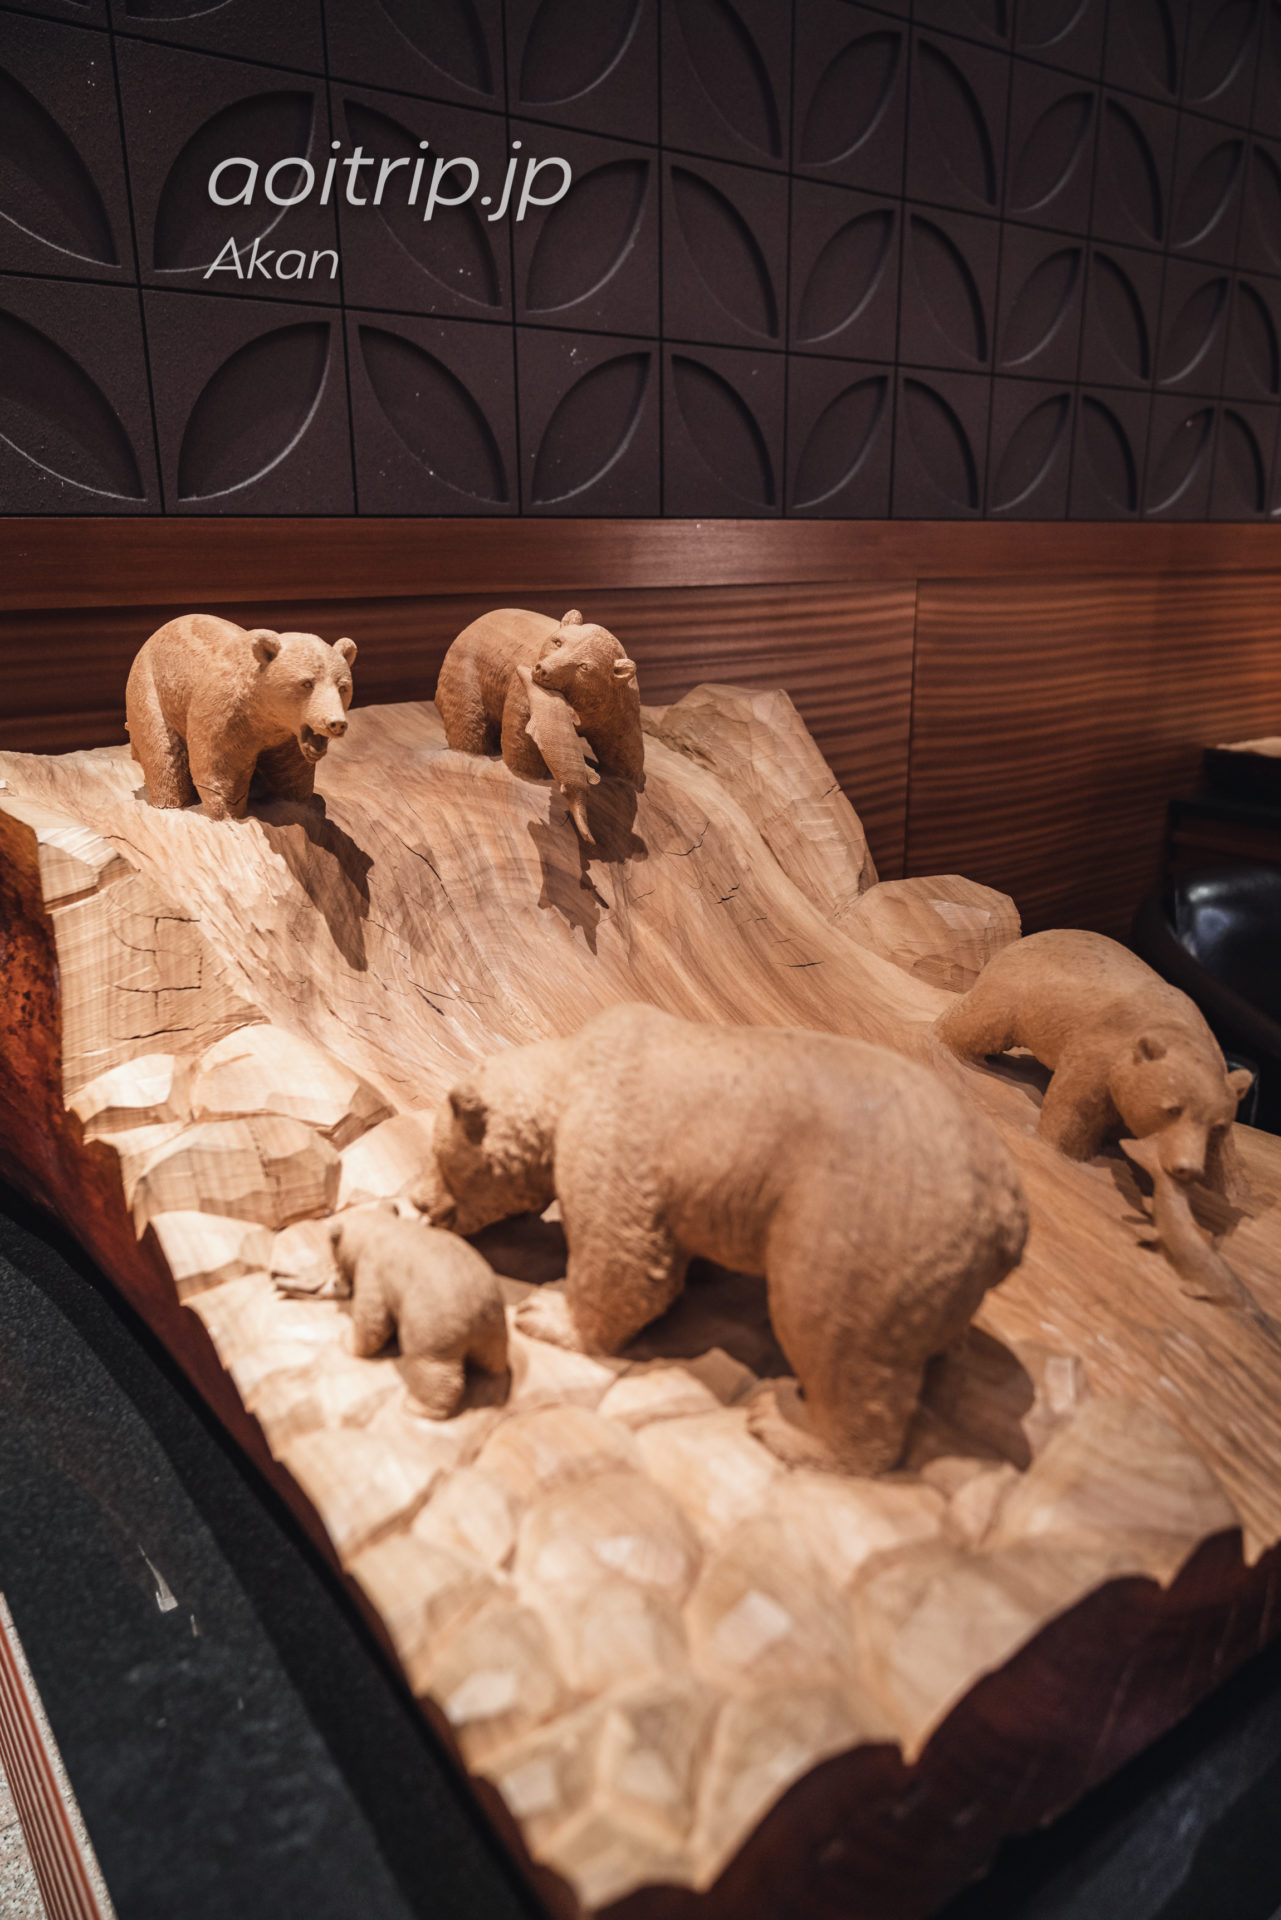 あかん湖 鶴雅ウイングスのロビー 故藤戸竹喜氏によるアイヌ文化を表現した彫刻